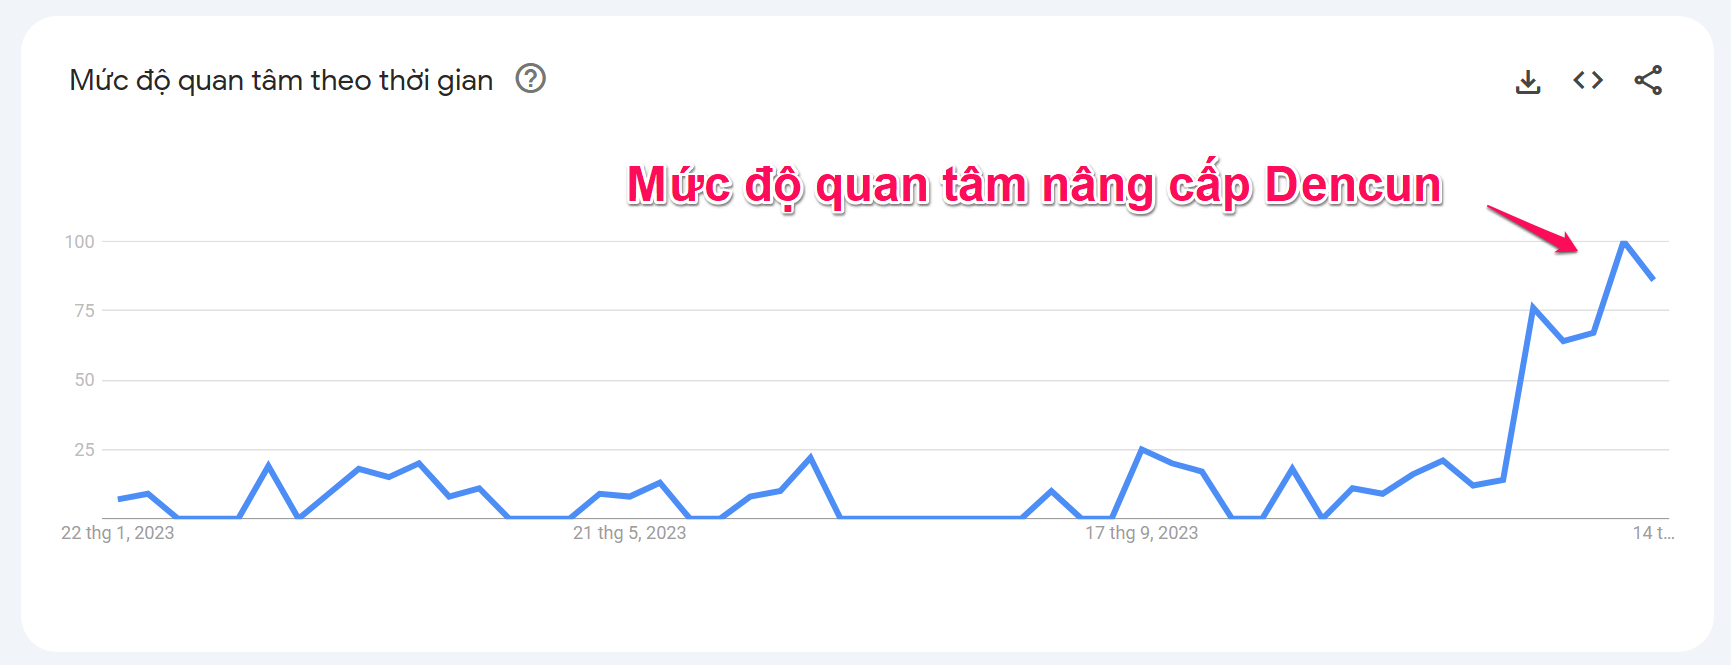 Mức độ quan tâm đến chủ đề "Dencun" theo thời gian. Nguồn: Google Trend.